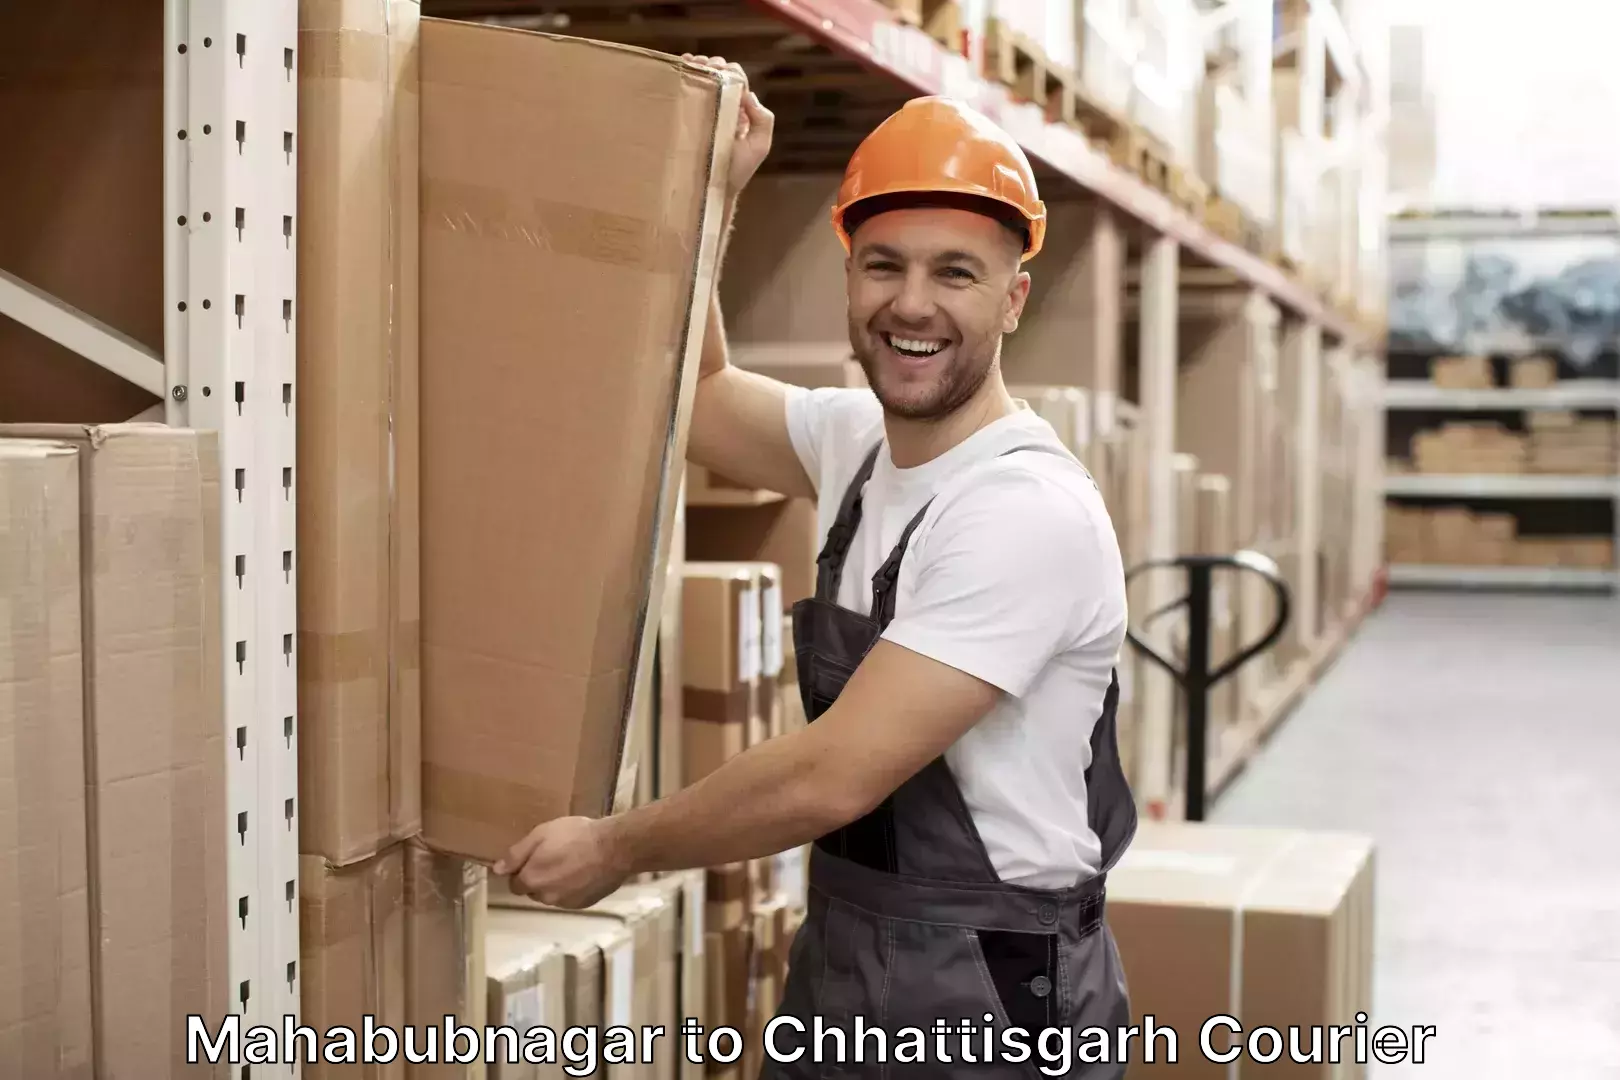 Luggage shipping planner Mahabubnagar to Chhattisgarh